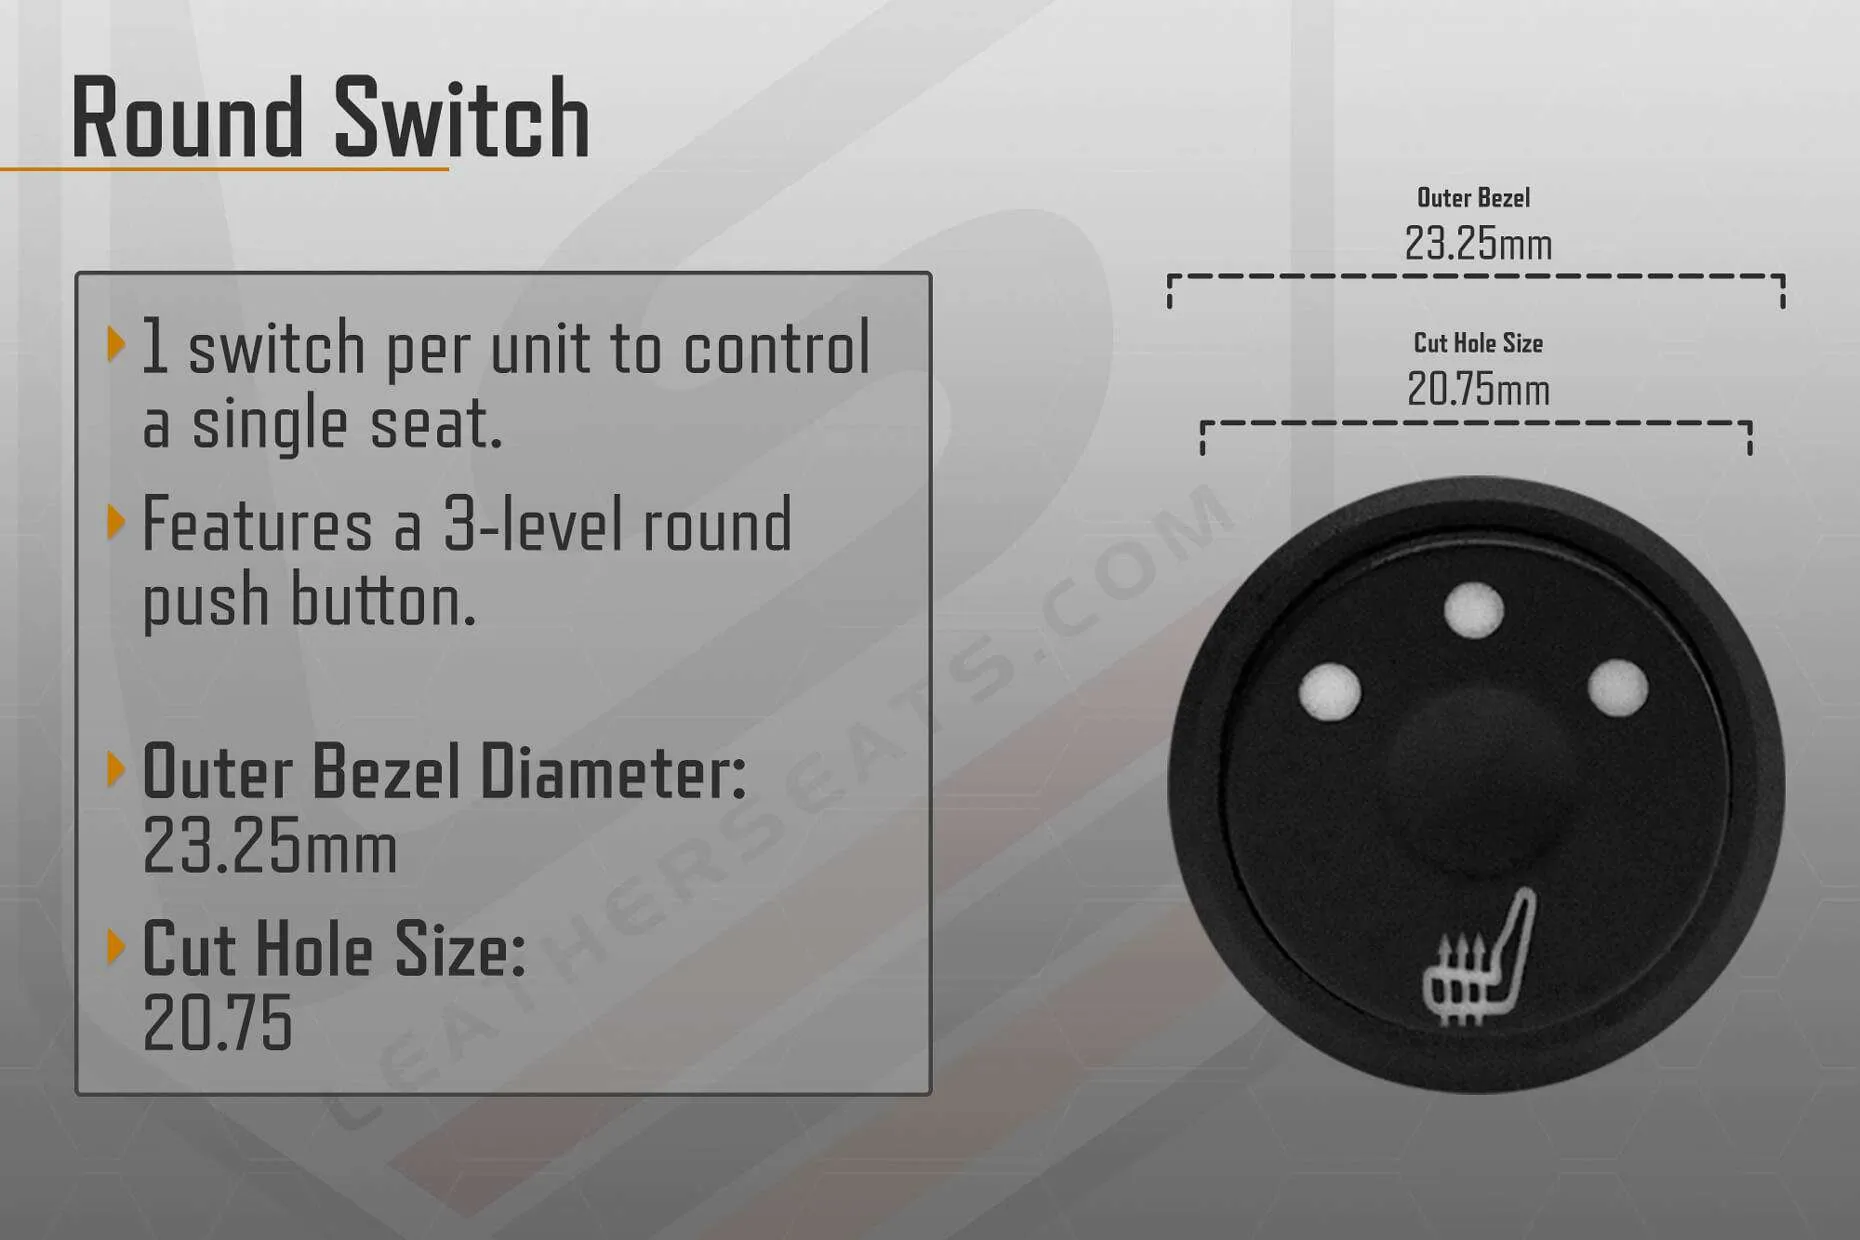 Round Switch Seat Heater General Information